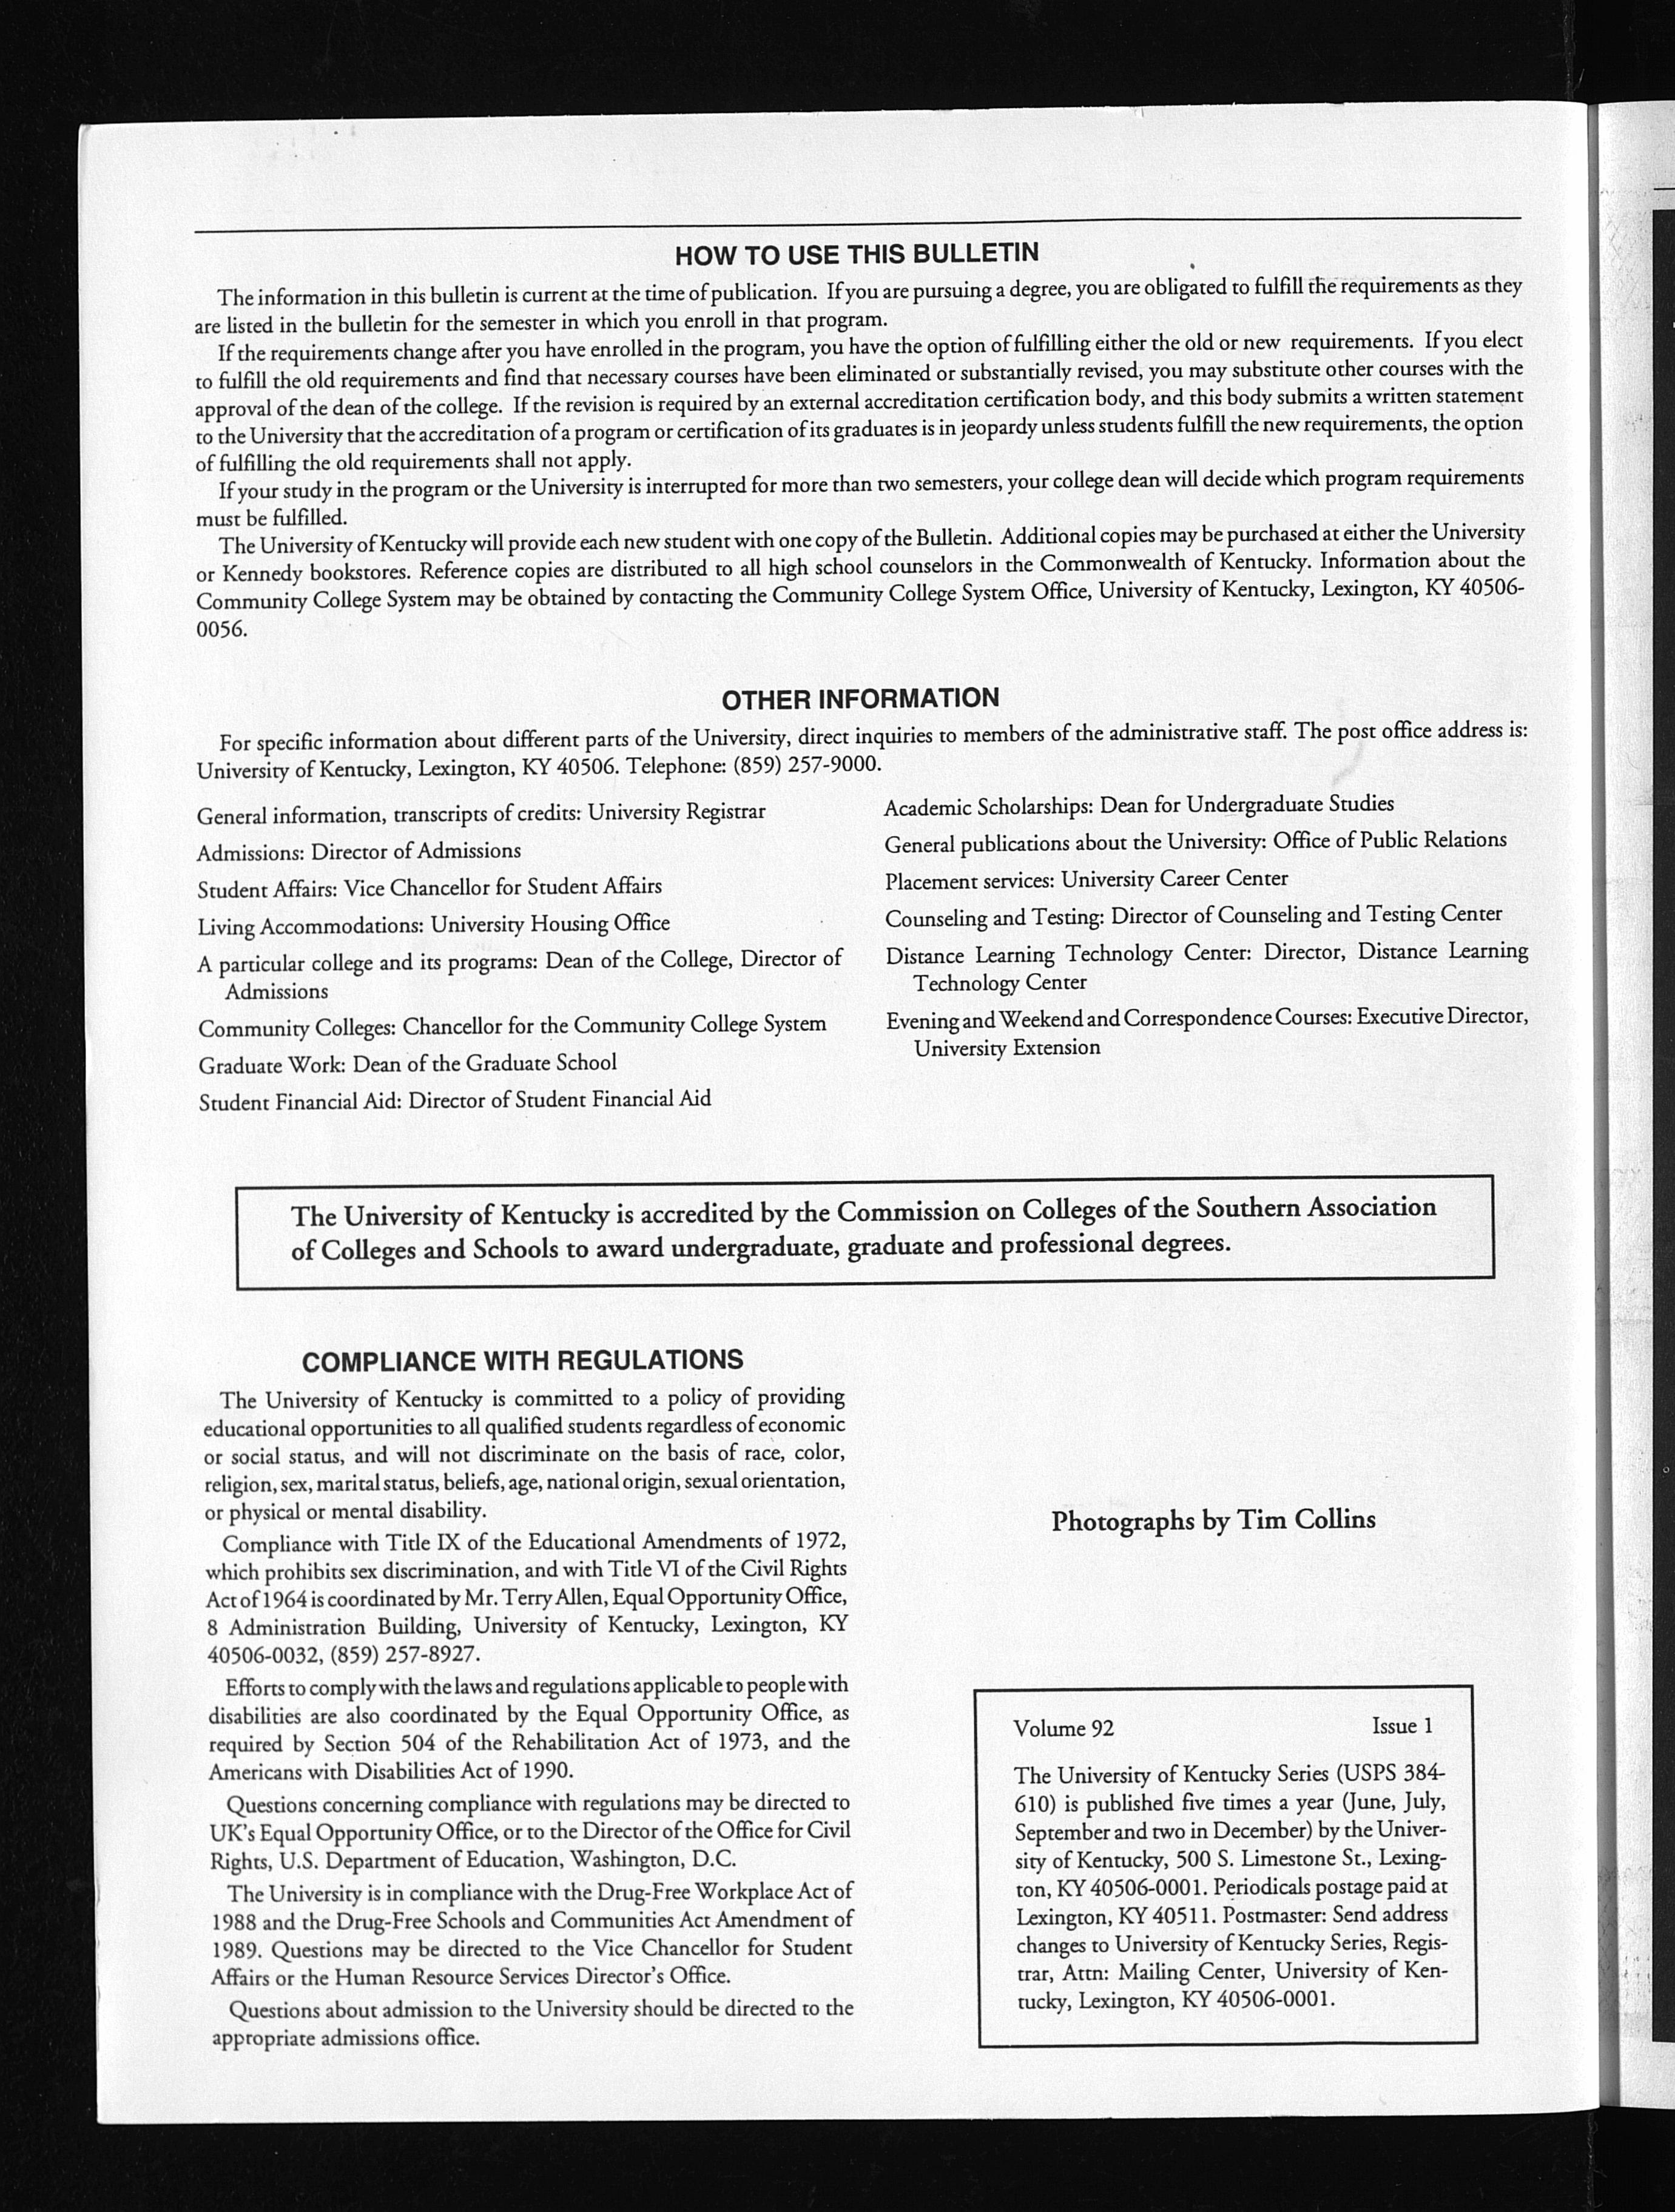 University Of Kentucky Series University Bulletin Volume 92 Issue 1 00 01